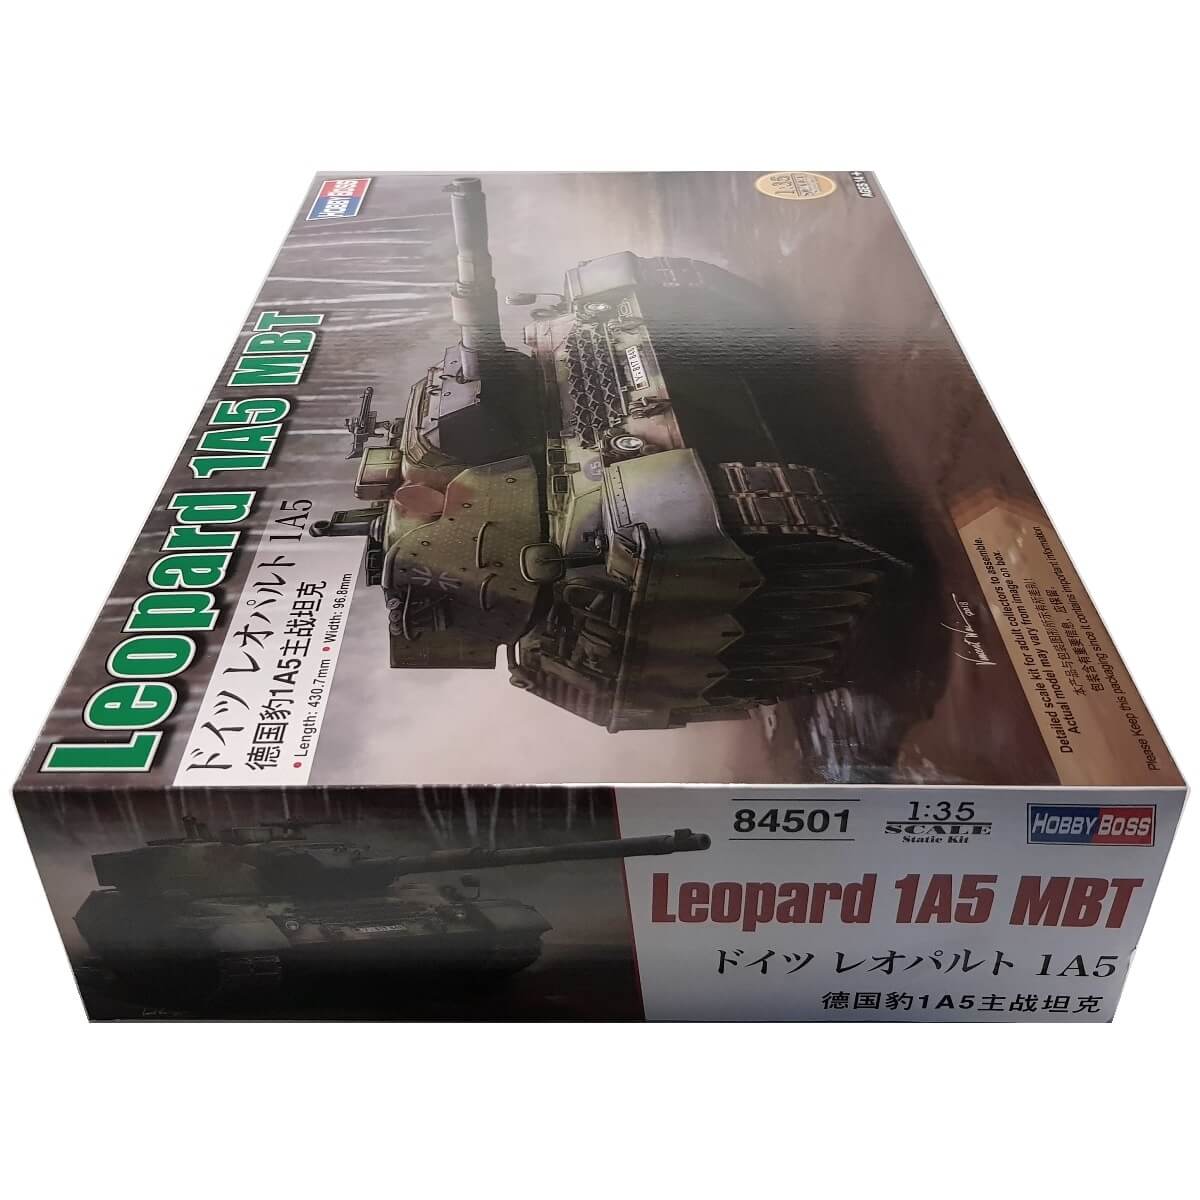 1:35 Leopard 1A5 MBT - HOBBY BOSS